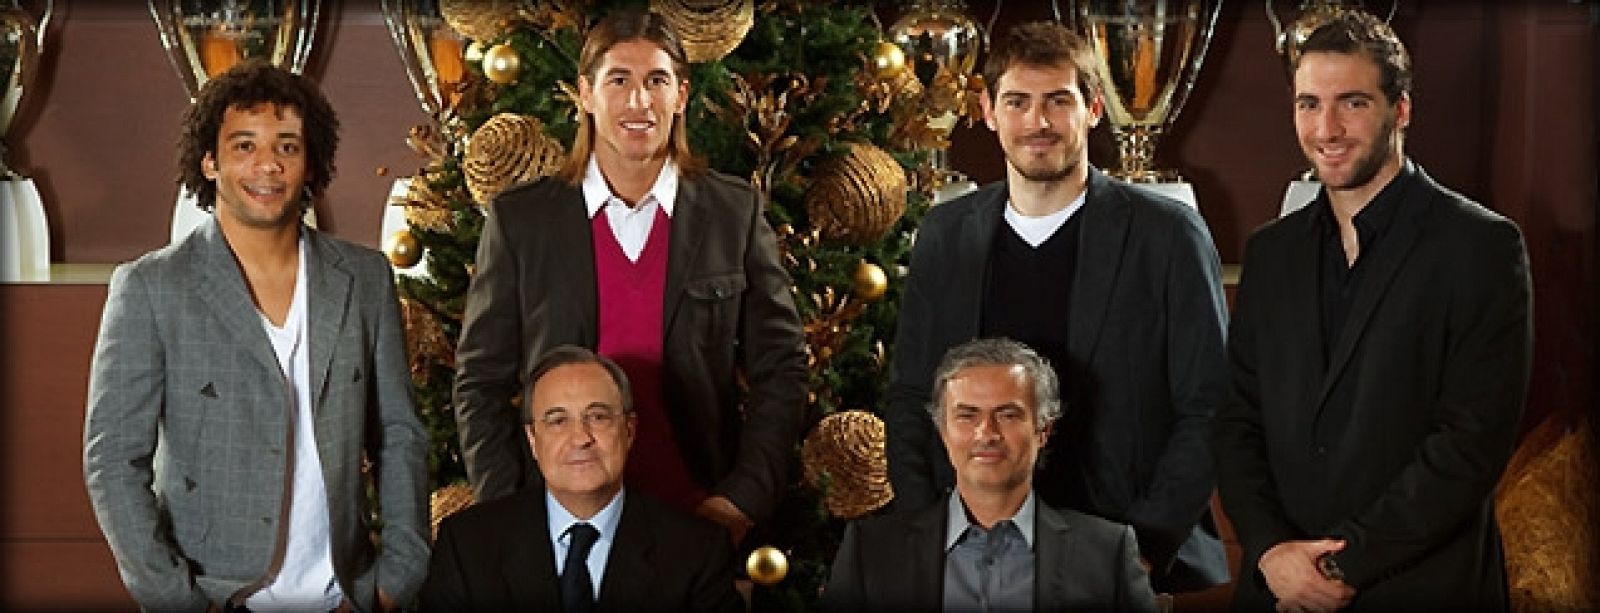 Imagen de la felicitación navideña del Real Madrid